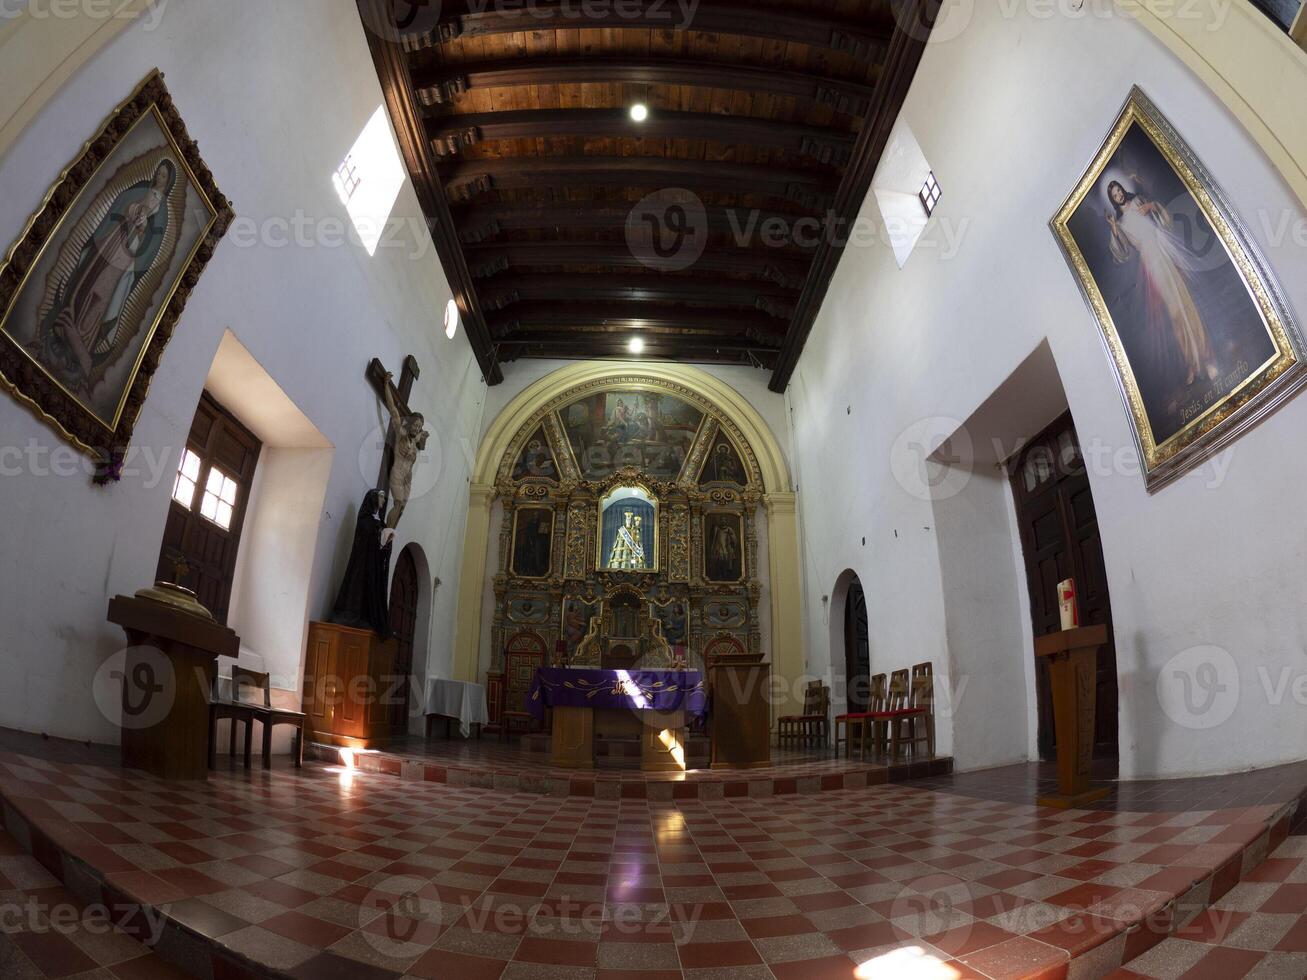 Loreto antiguo misión en soleado día baja California sur mexico foto